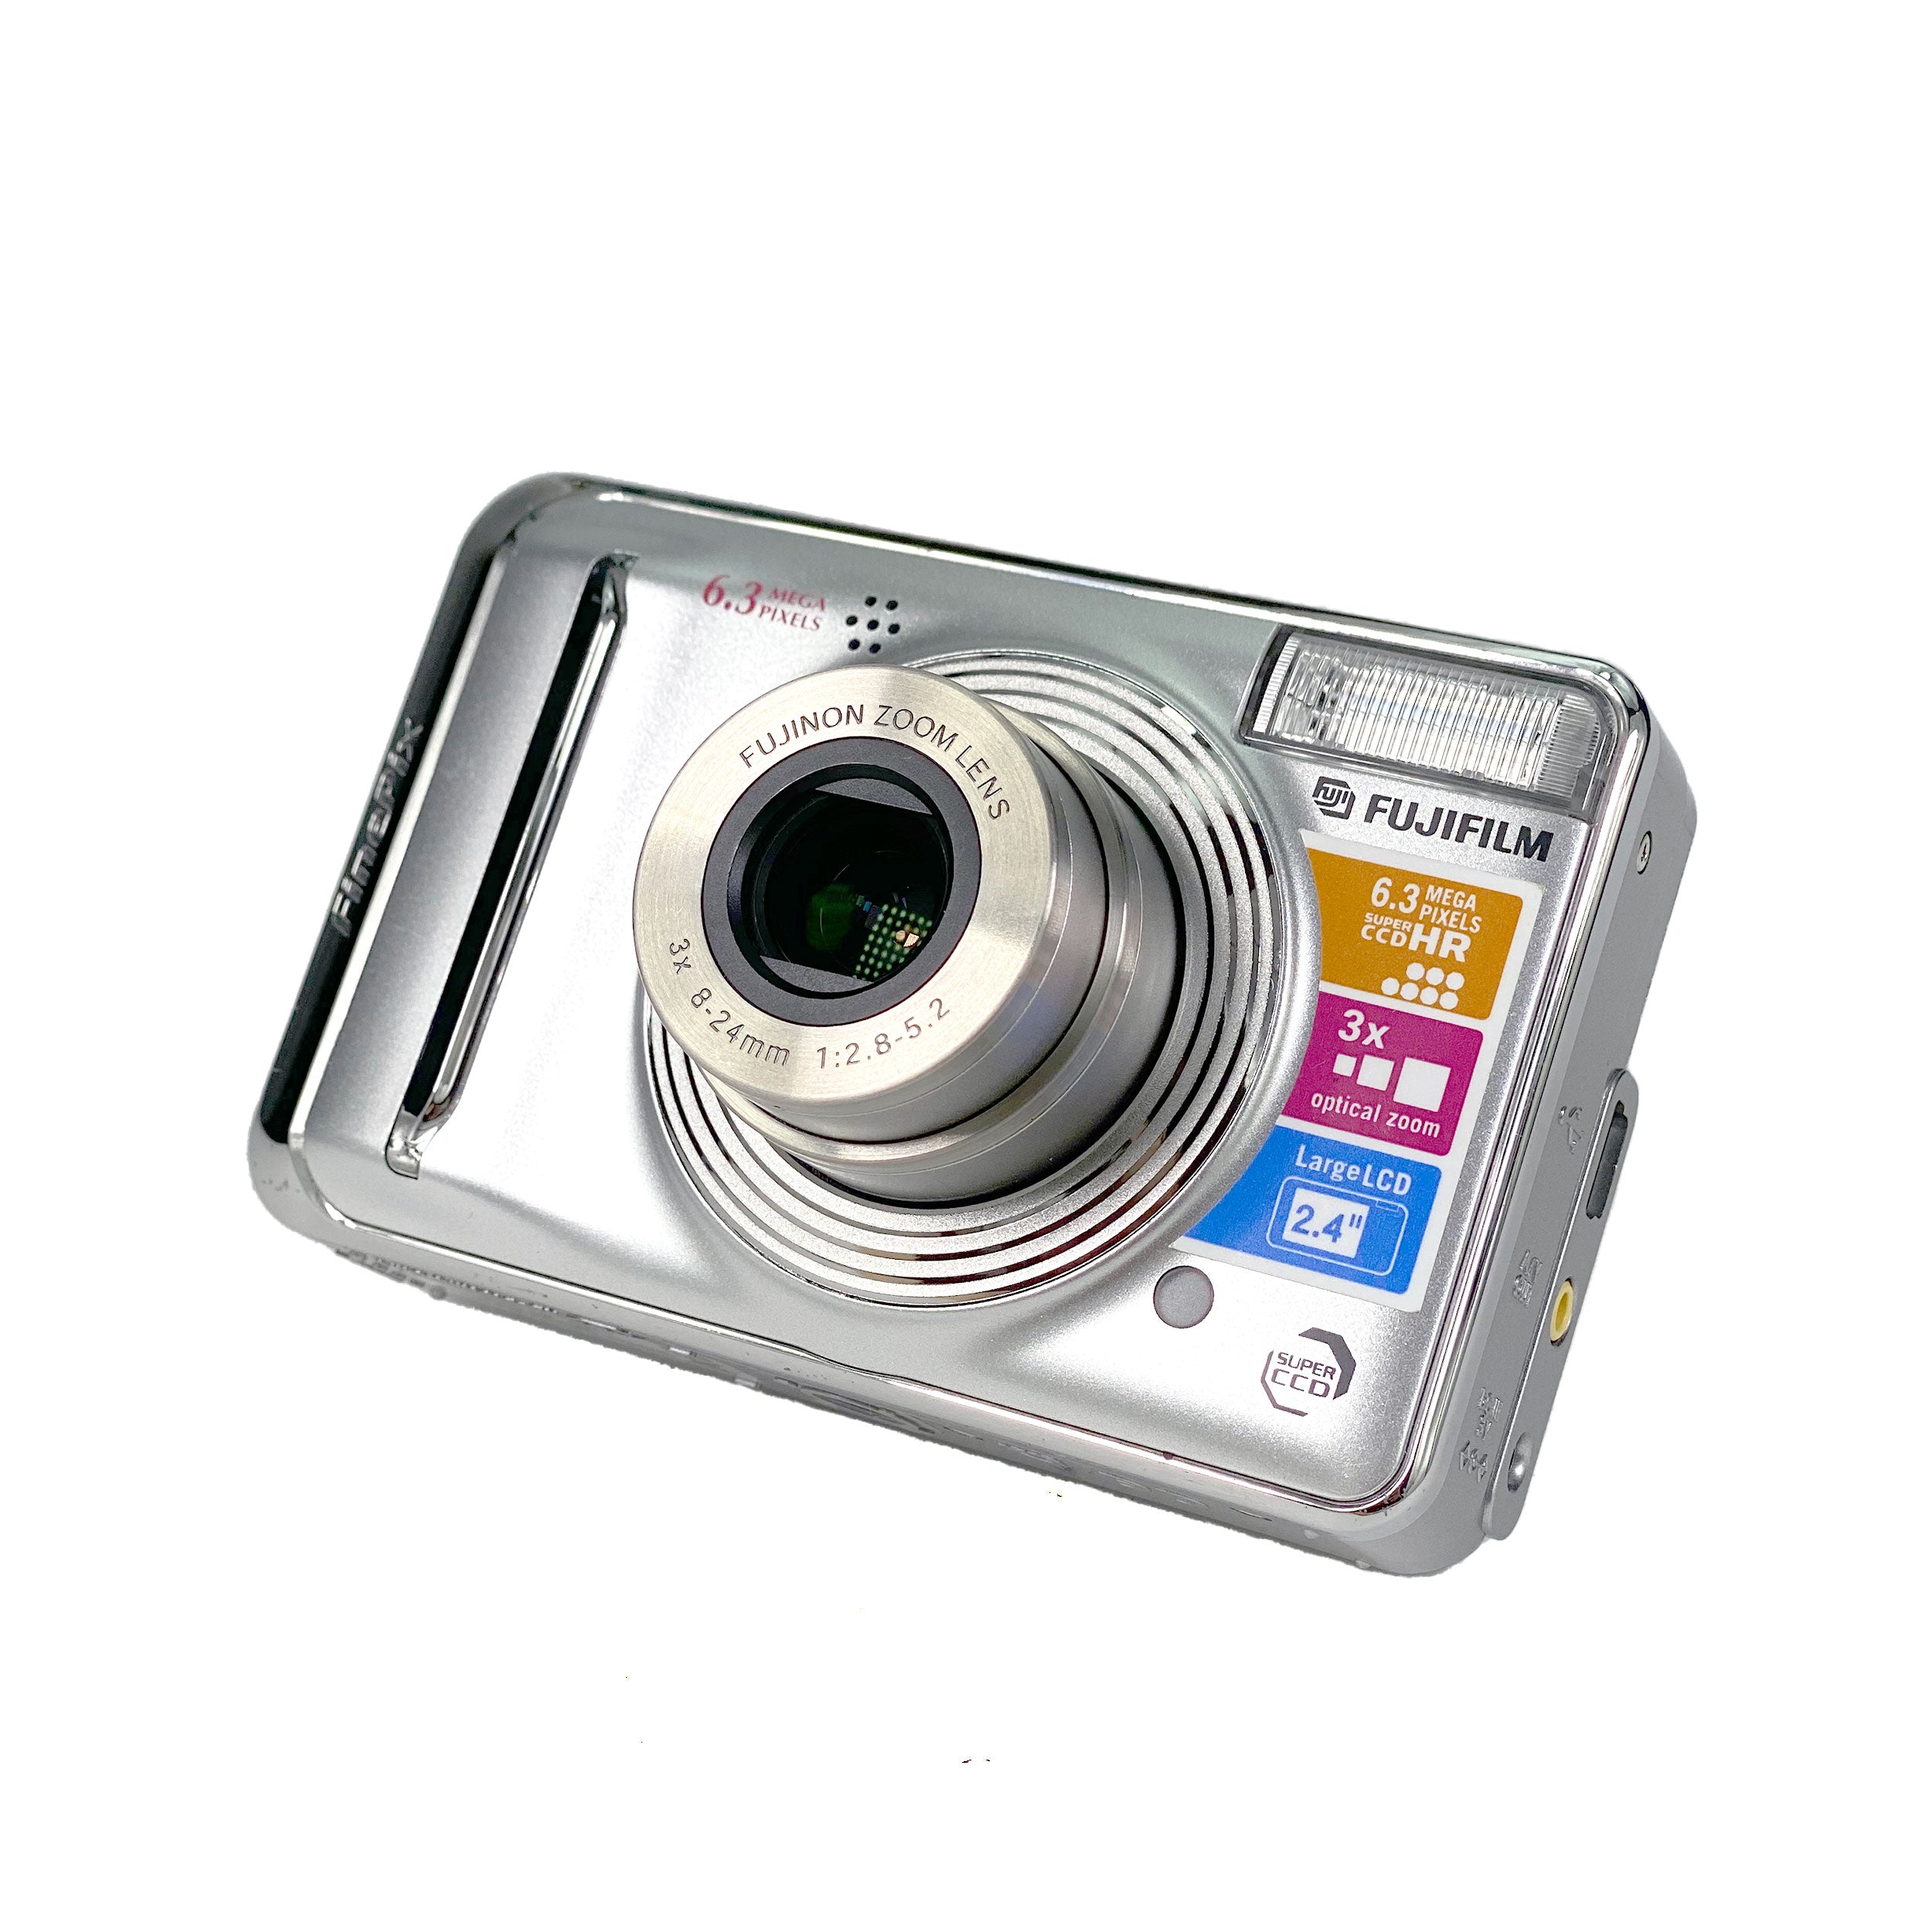 FUJIFILM Finepix A600 シルバー - デジタルカメラ